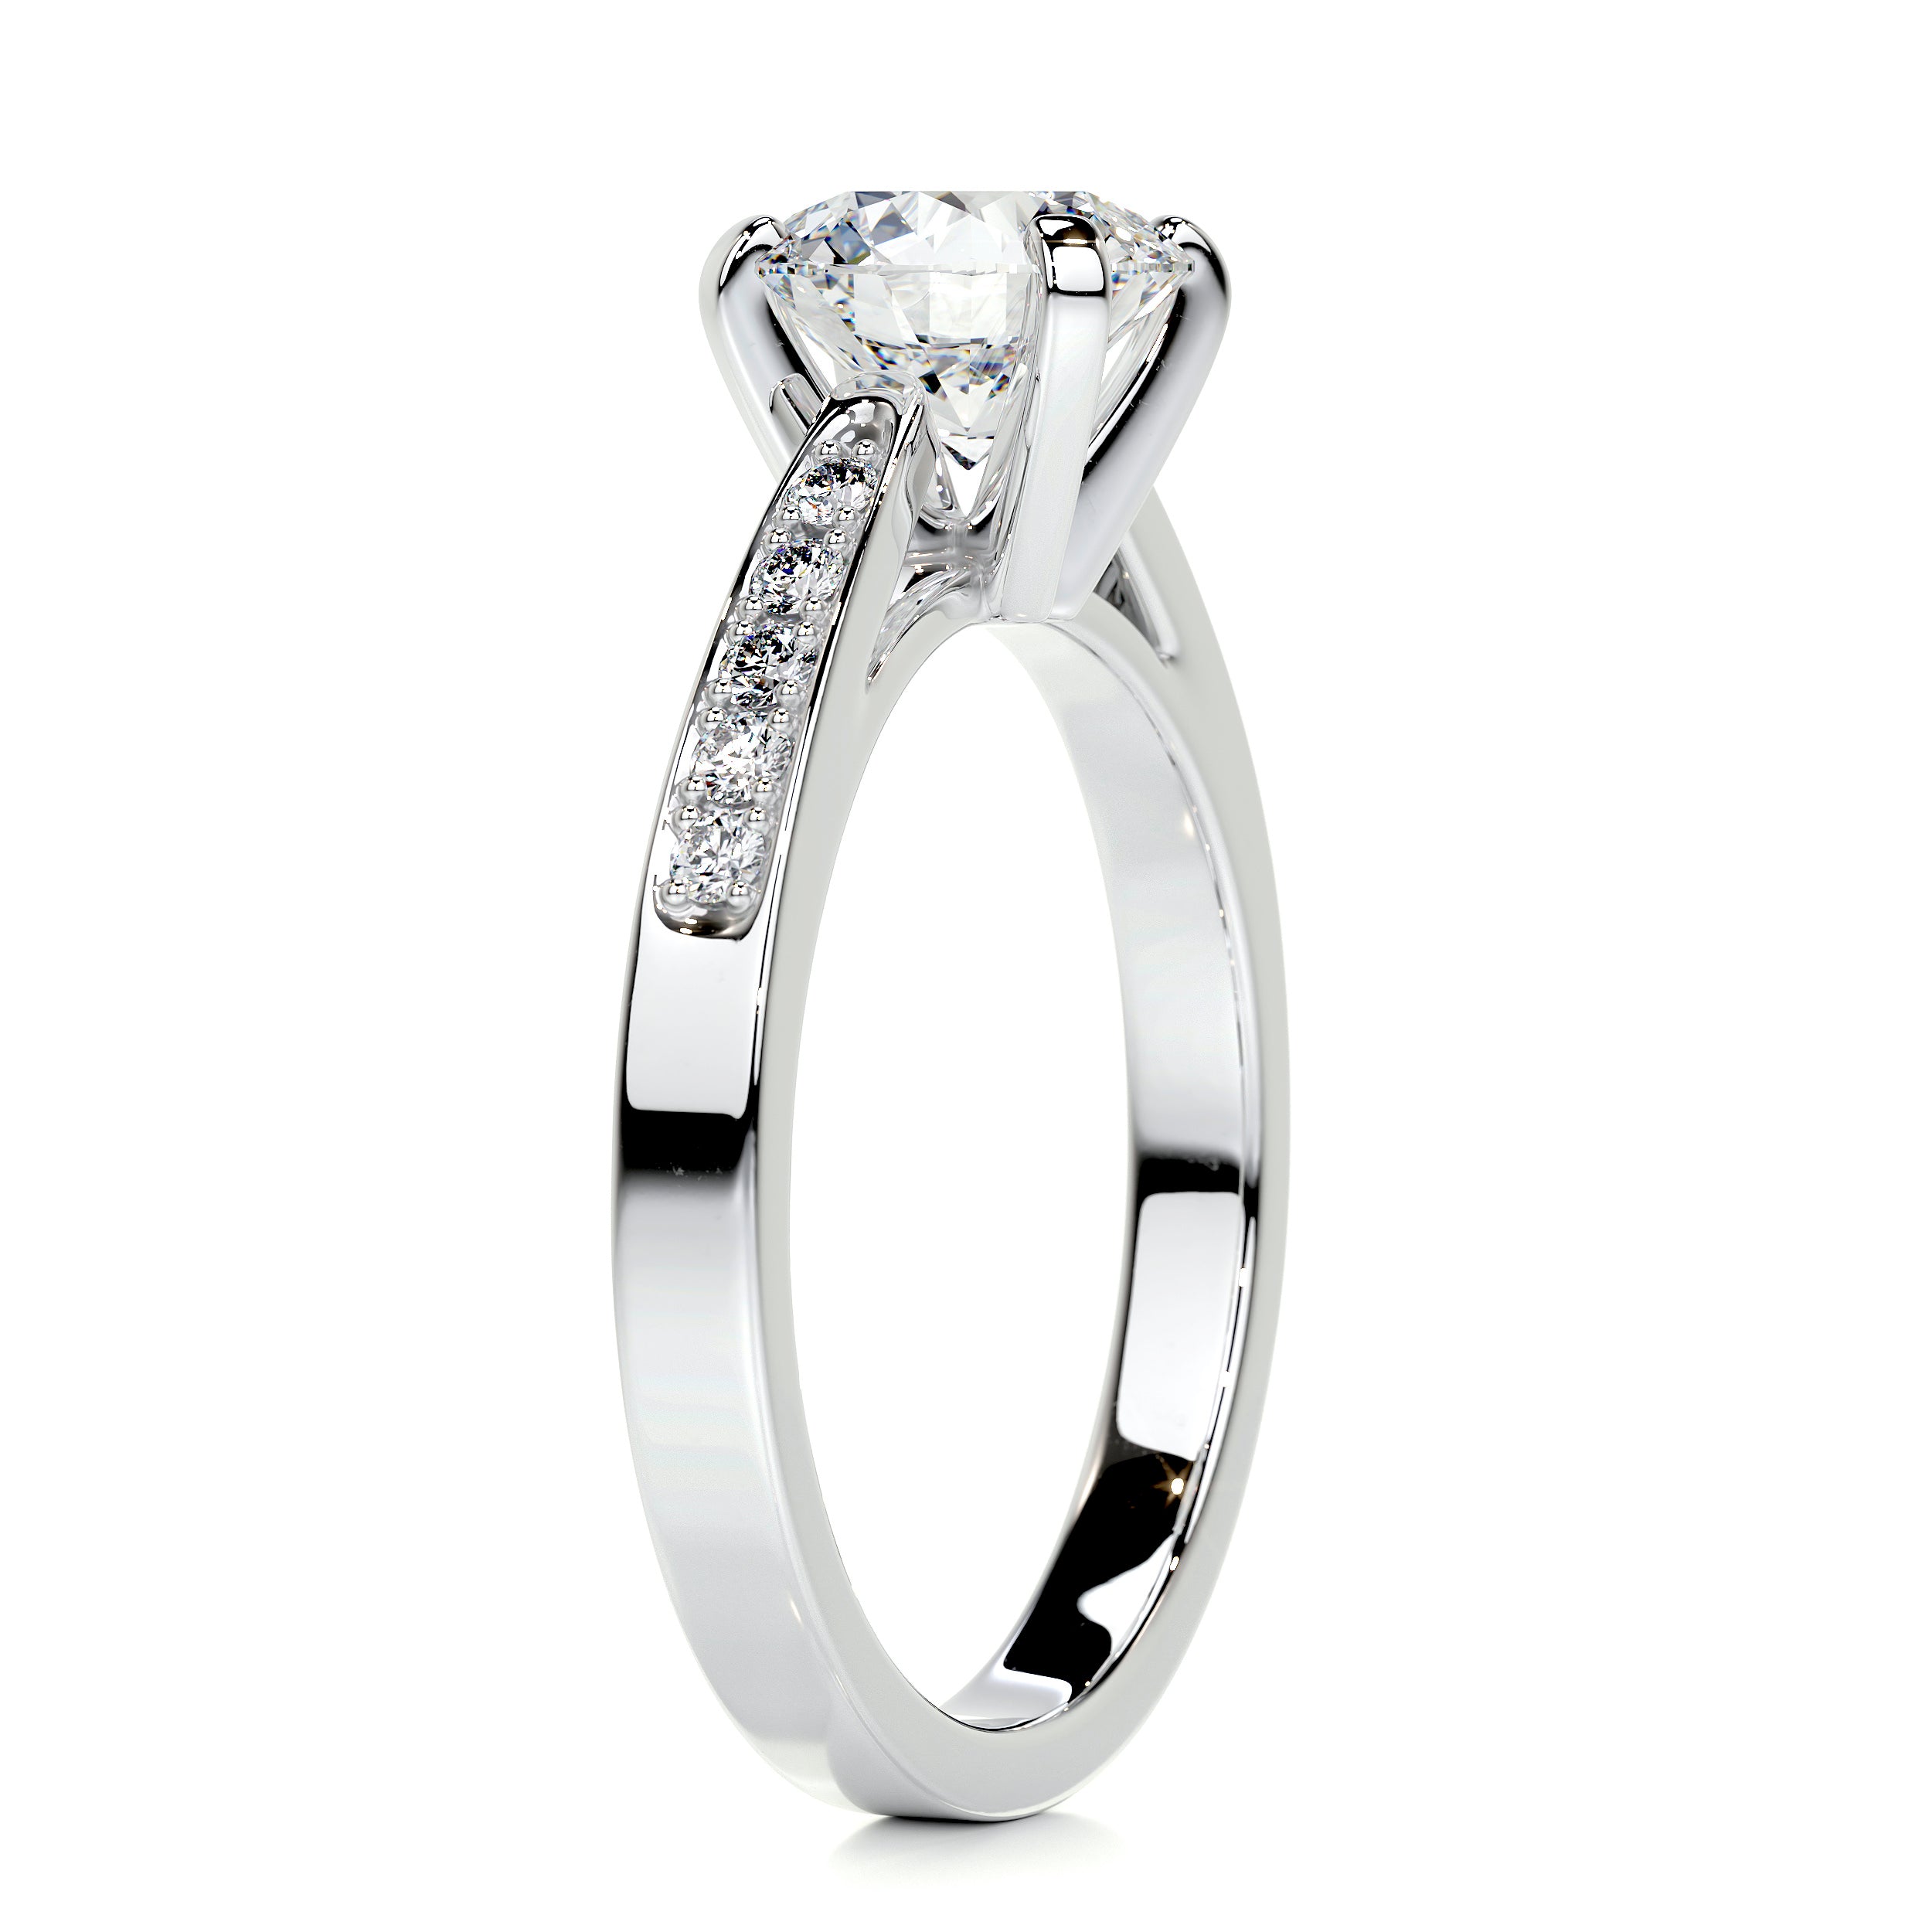 Margaret Diamond Engagement Ring   (1.35 Carat) -Platinum